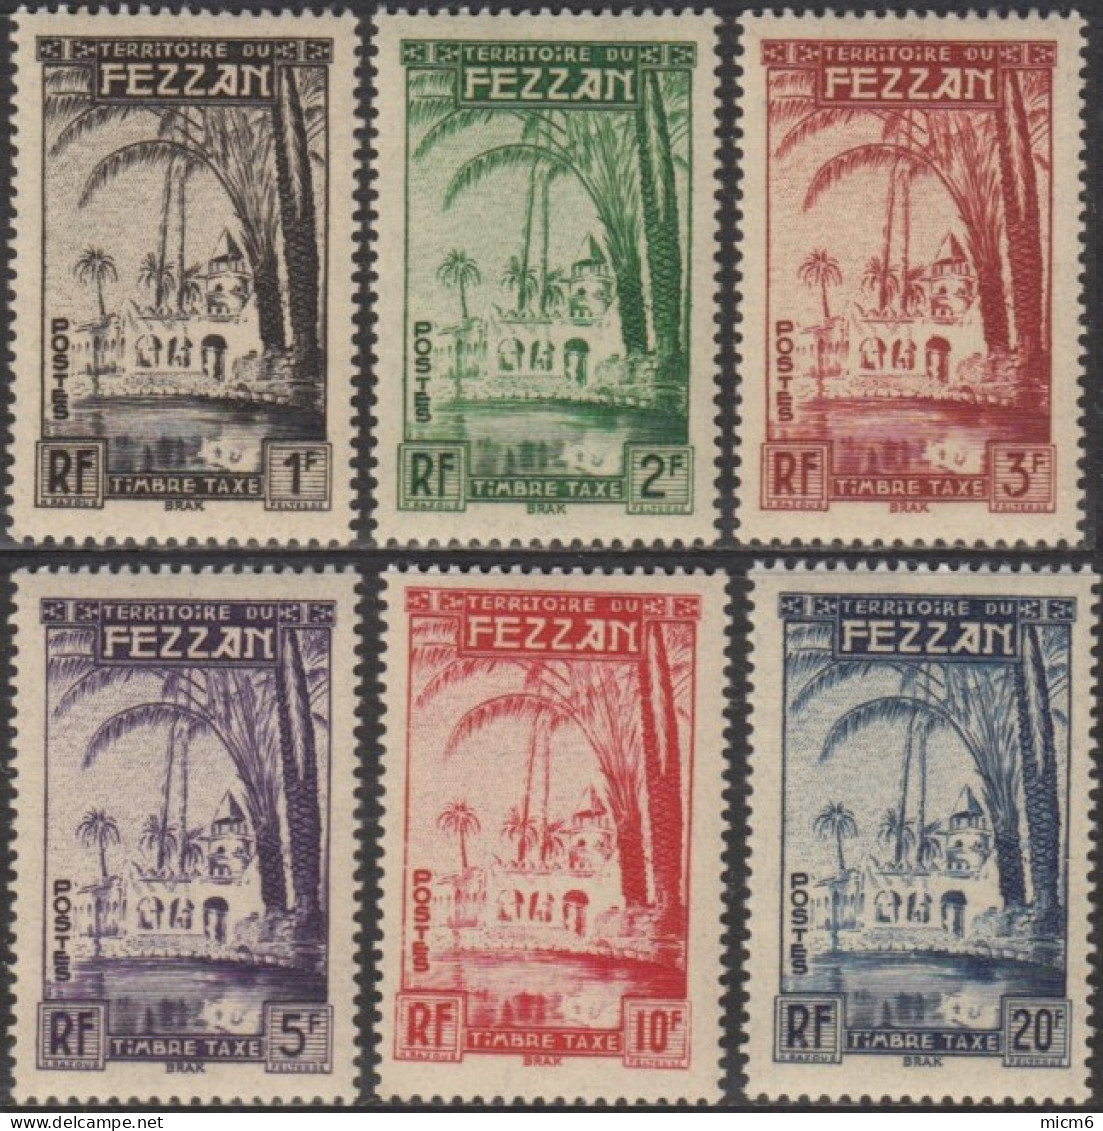 Fezzan (Territoire Militaire Du) - Timbres-taxe N° 6 à 11 (YT) N° 6 à 11 (AM) Neufs *. - Unused Stamps